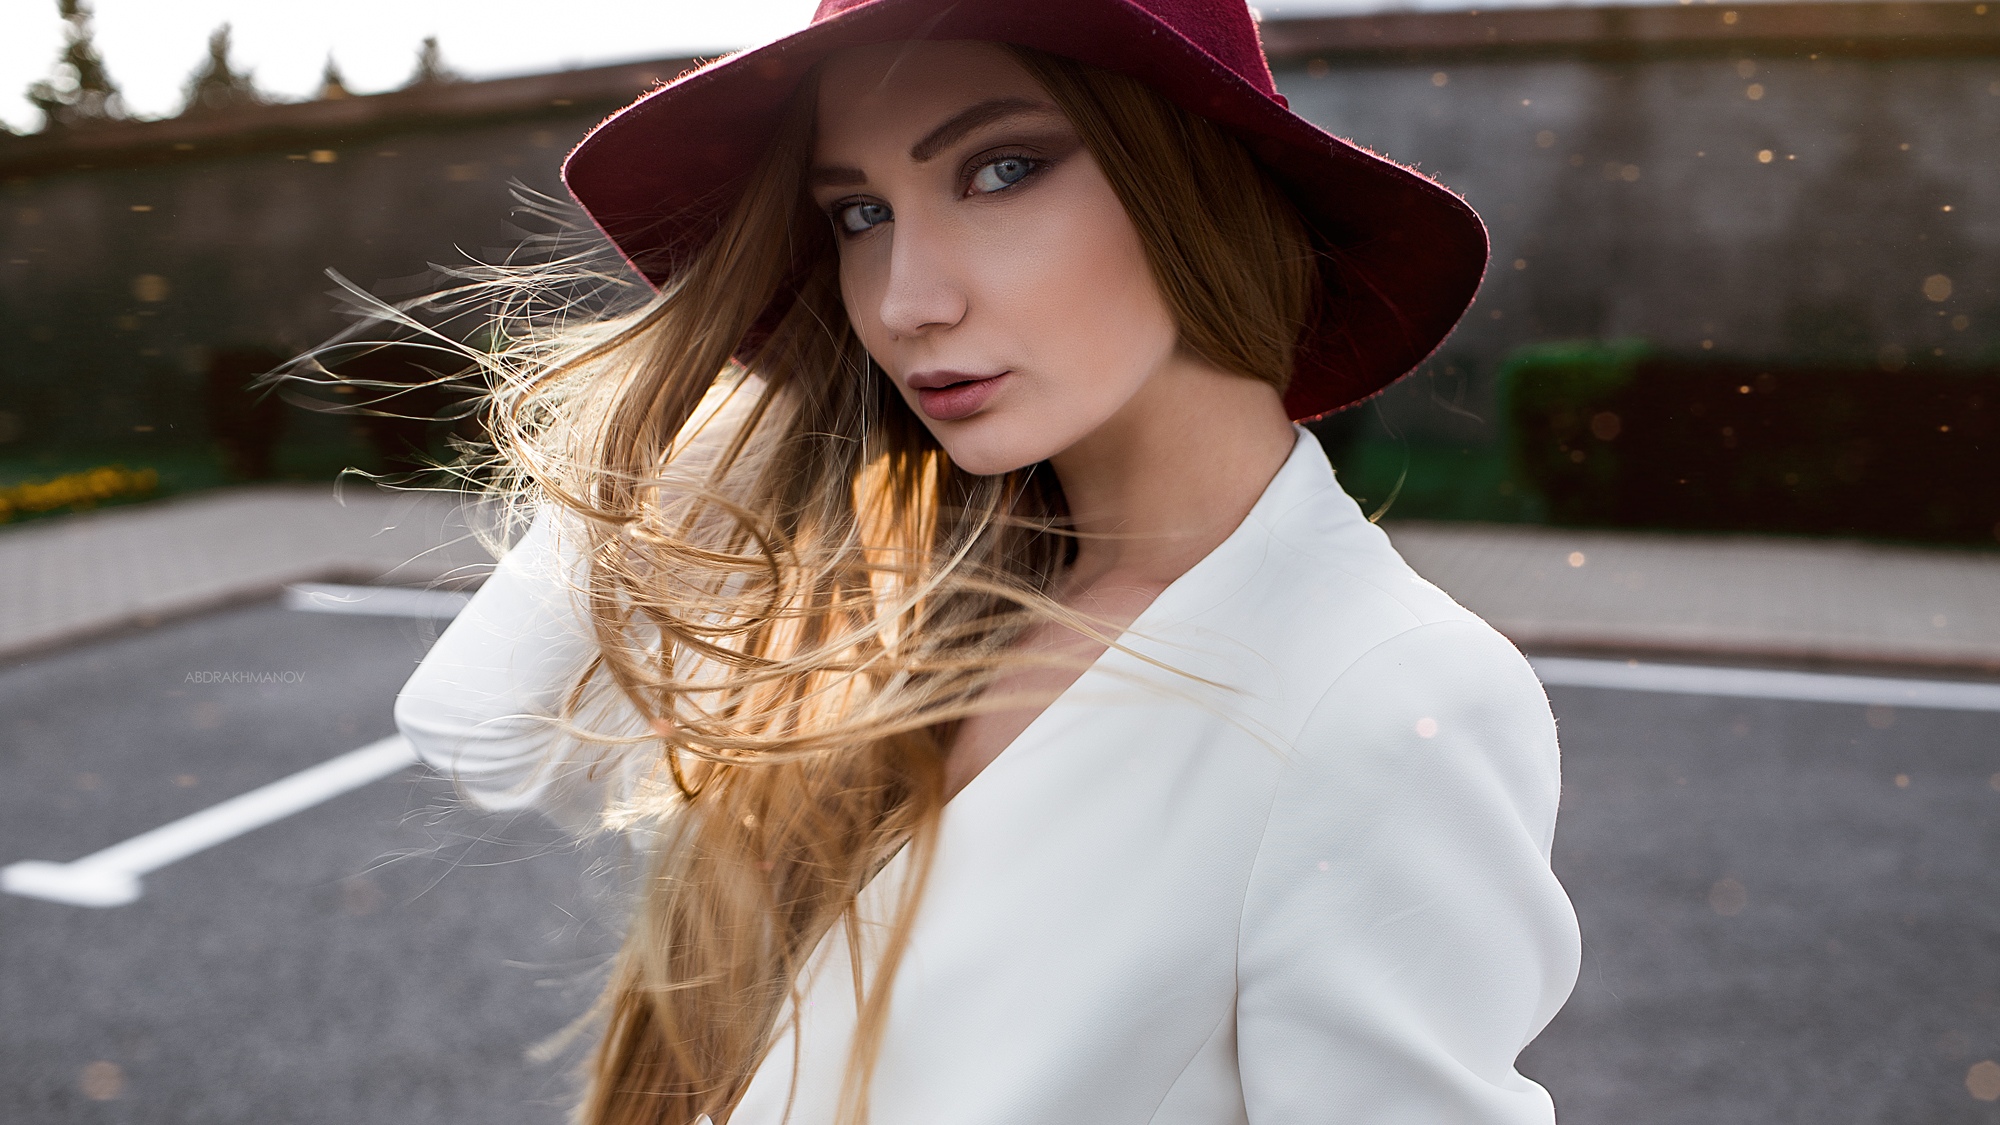 Lenar Abdrakhmanov Women Model Outdoors Women With Hats Hat Brunette Face Sun Rays 2000x1125